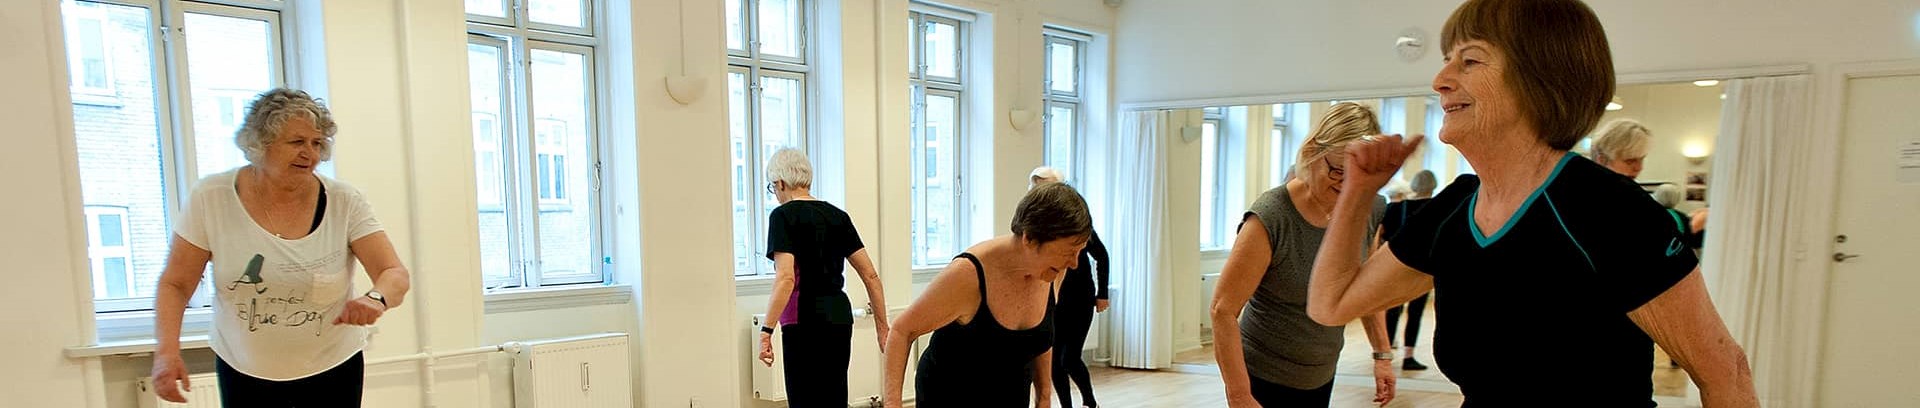 Kursus ved FOF Aarhus ' Sundhedstræning 60+' ved underviser Agnete Salomonsen